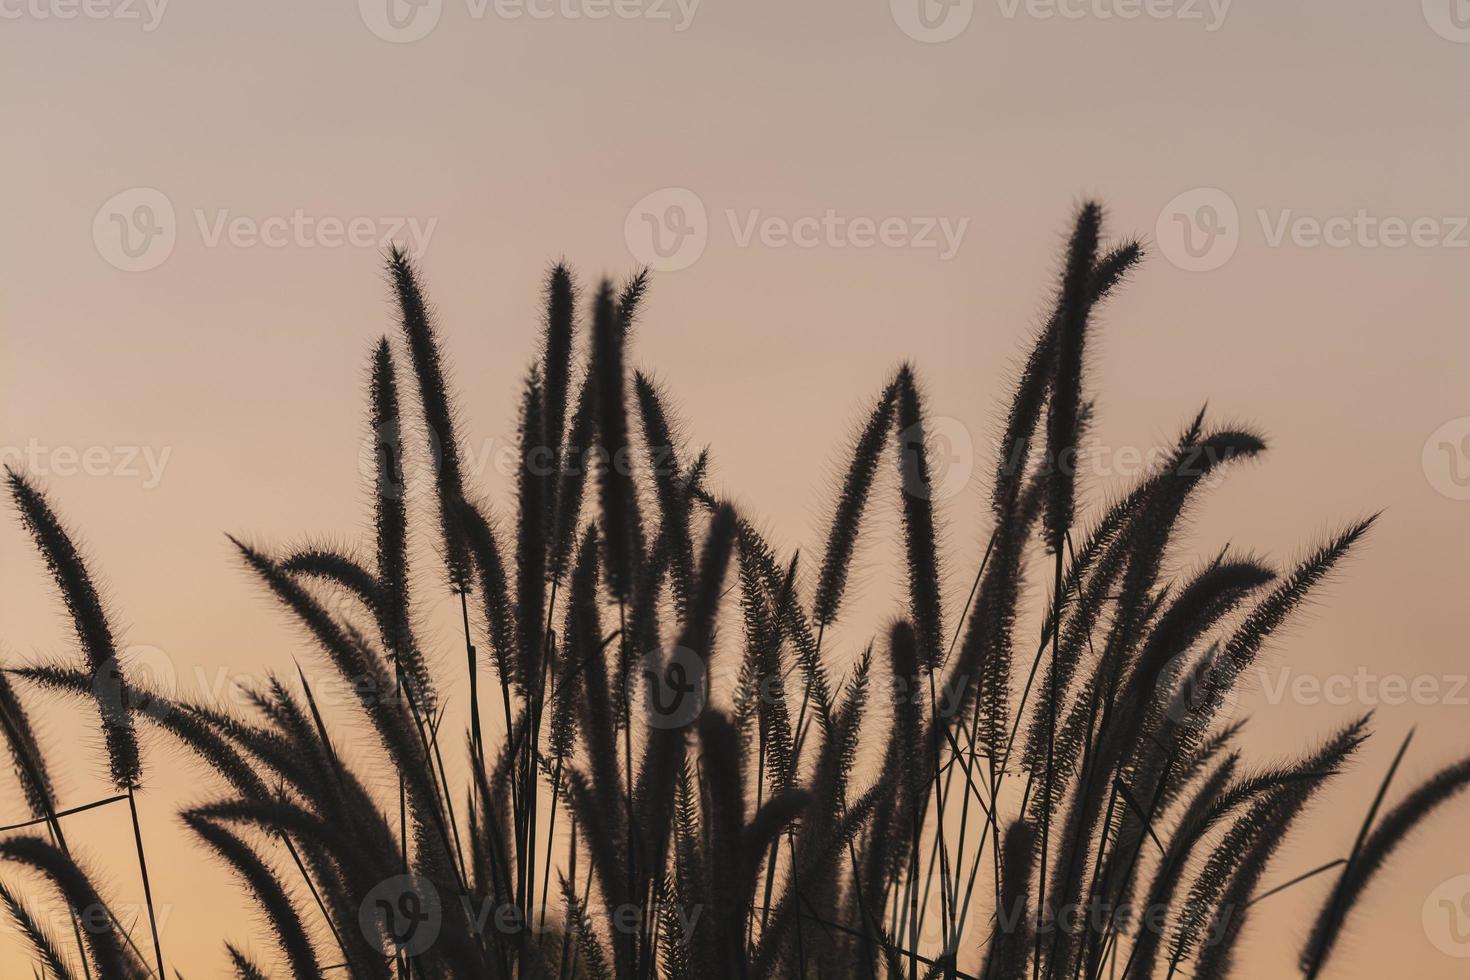 flores de pradera en una luz suave y cálida. fondo natural borroso del paisaje otoñal vintage. foto